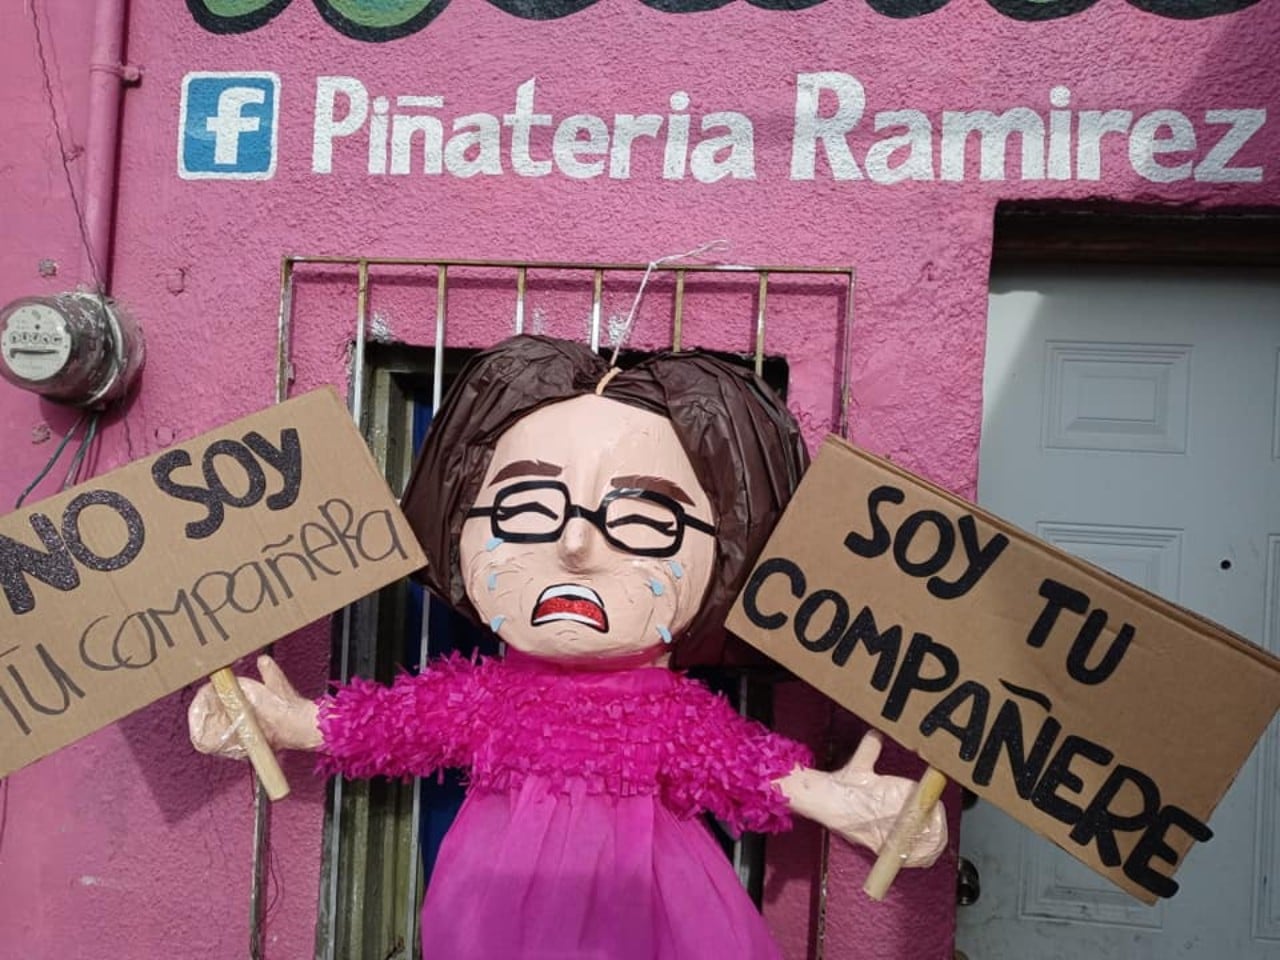 Piñata Compañere de la piñatería Ramírez